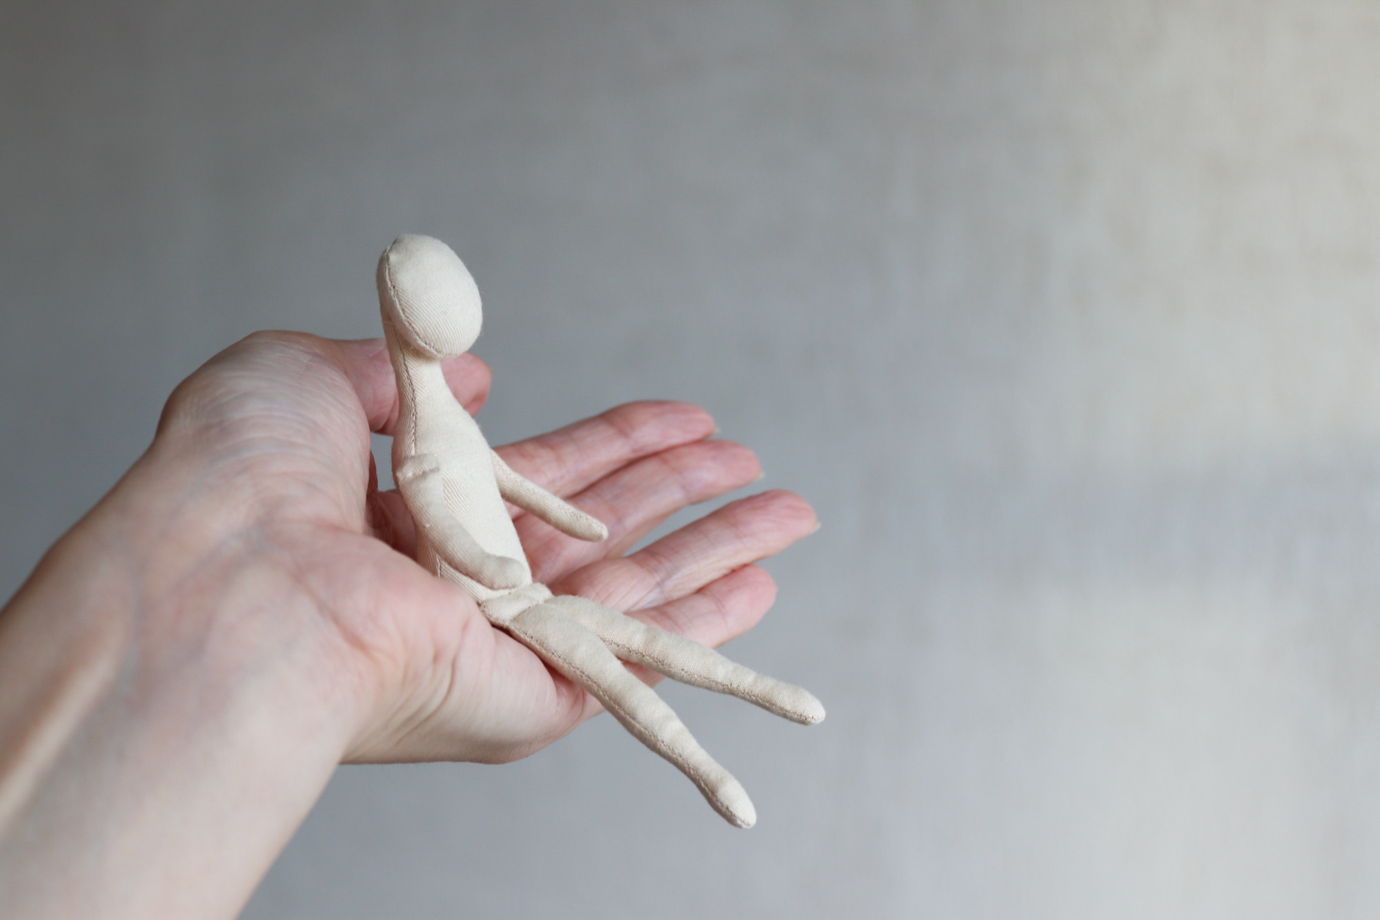 Элла, 13 см. Заготовка интерьерной куклы из текстиля для хобби, творчества, рукоделия